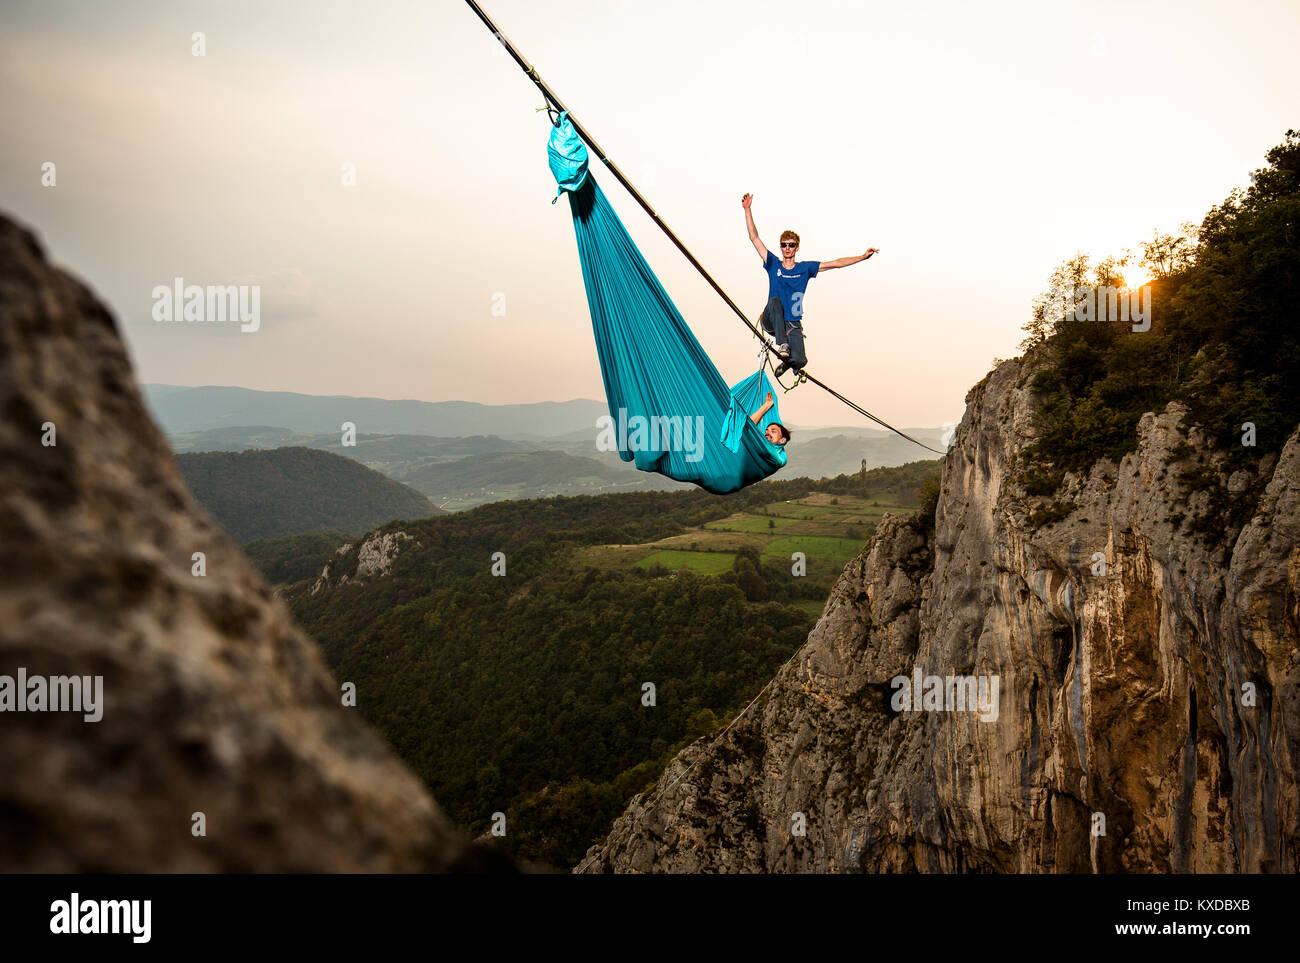 Highline Athlet zu Fuß auf slackline in Berge, während seine Kollegen hängen in Hängematte, Tijesno Canyon, Banja Luka, Bosnien Stockfoto